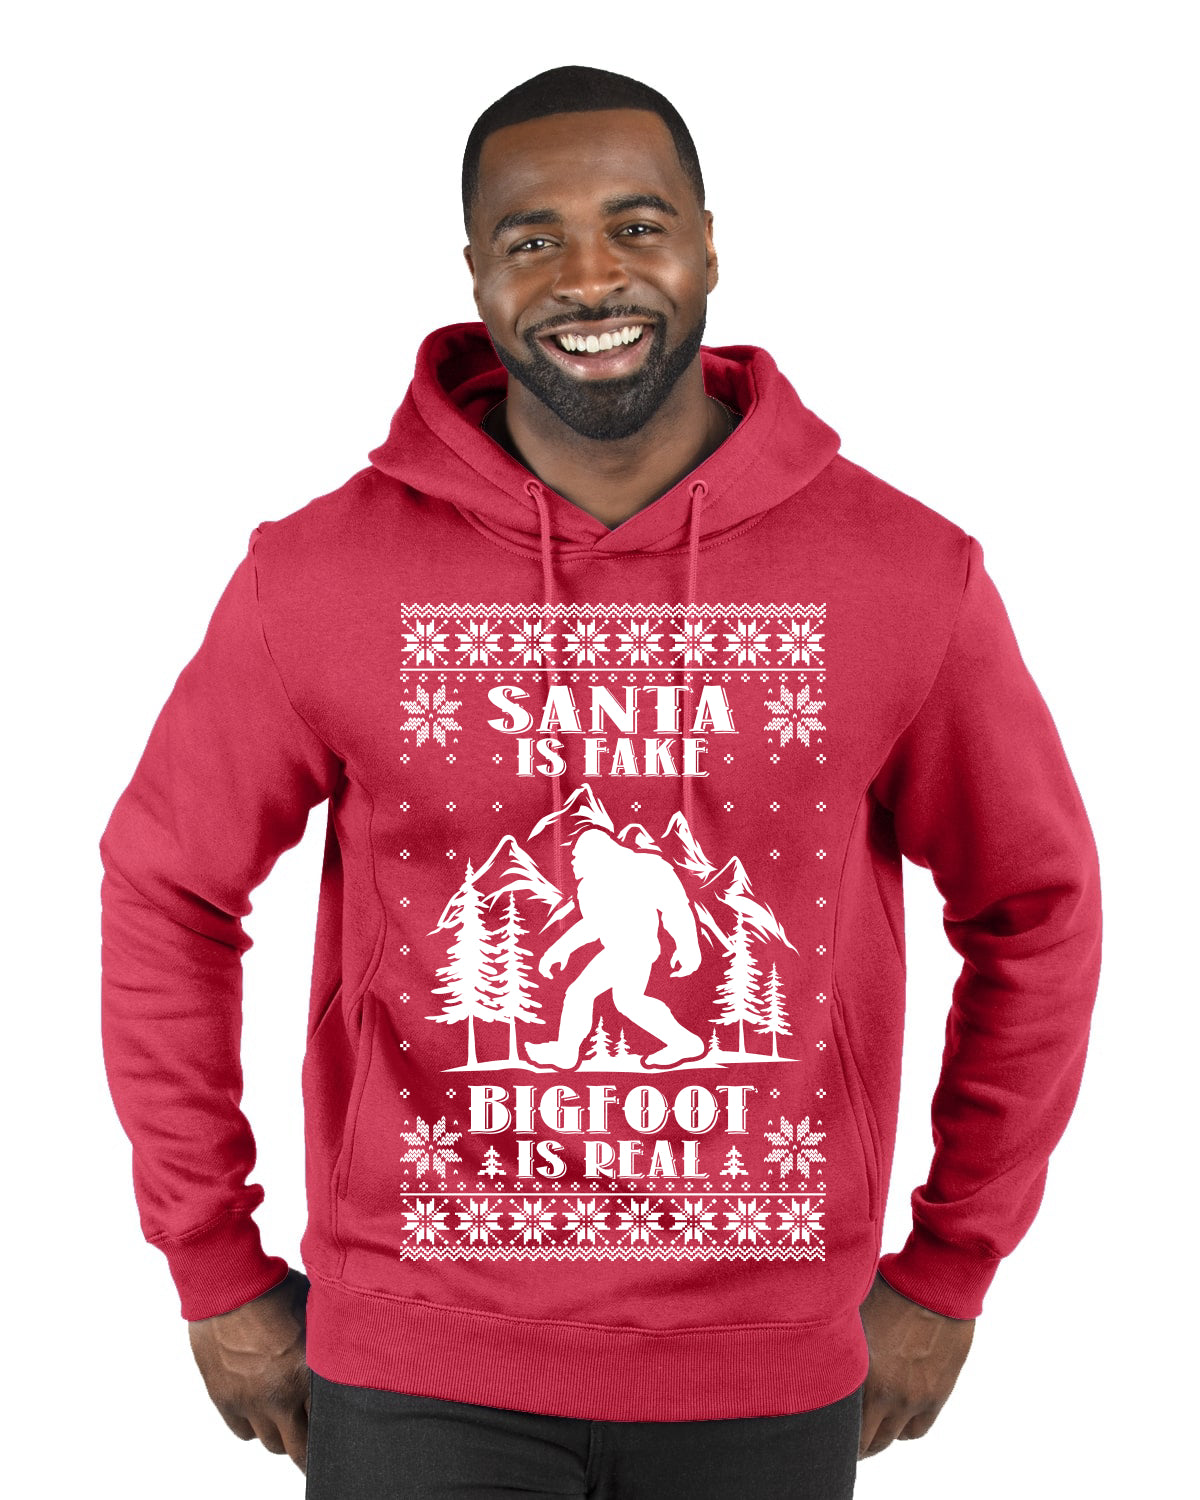 Santa Is Fake Bigfoot Is Real Ugly Christmas Sweater Premium Graphic Hoodie Sweatshirt